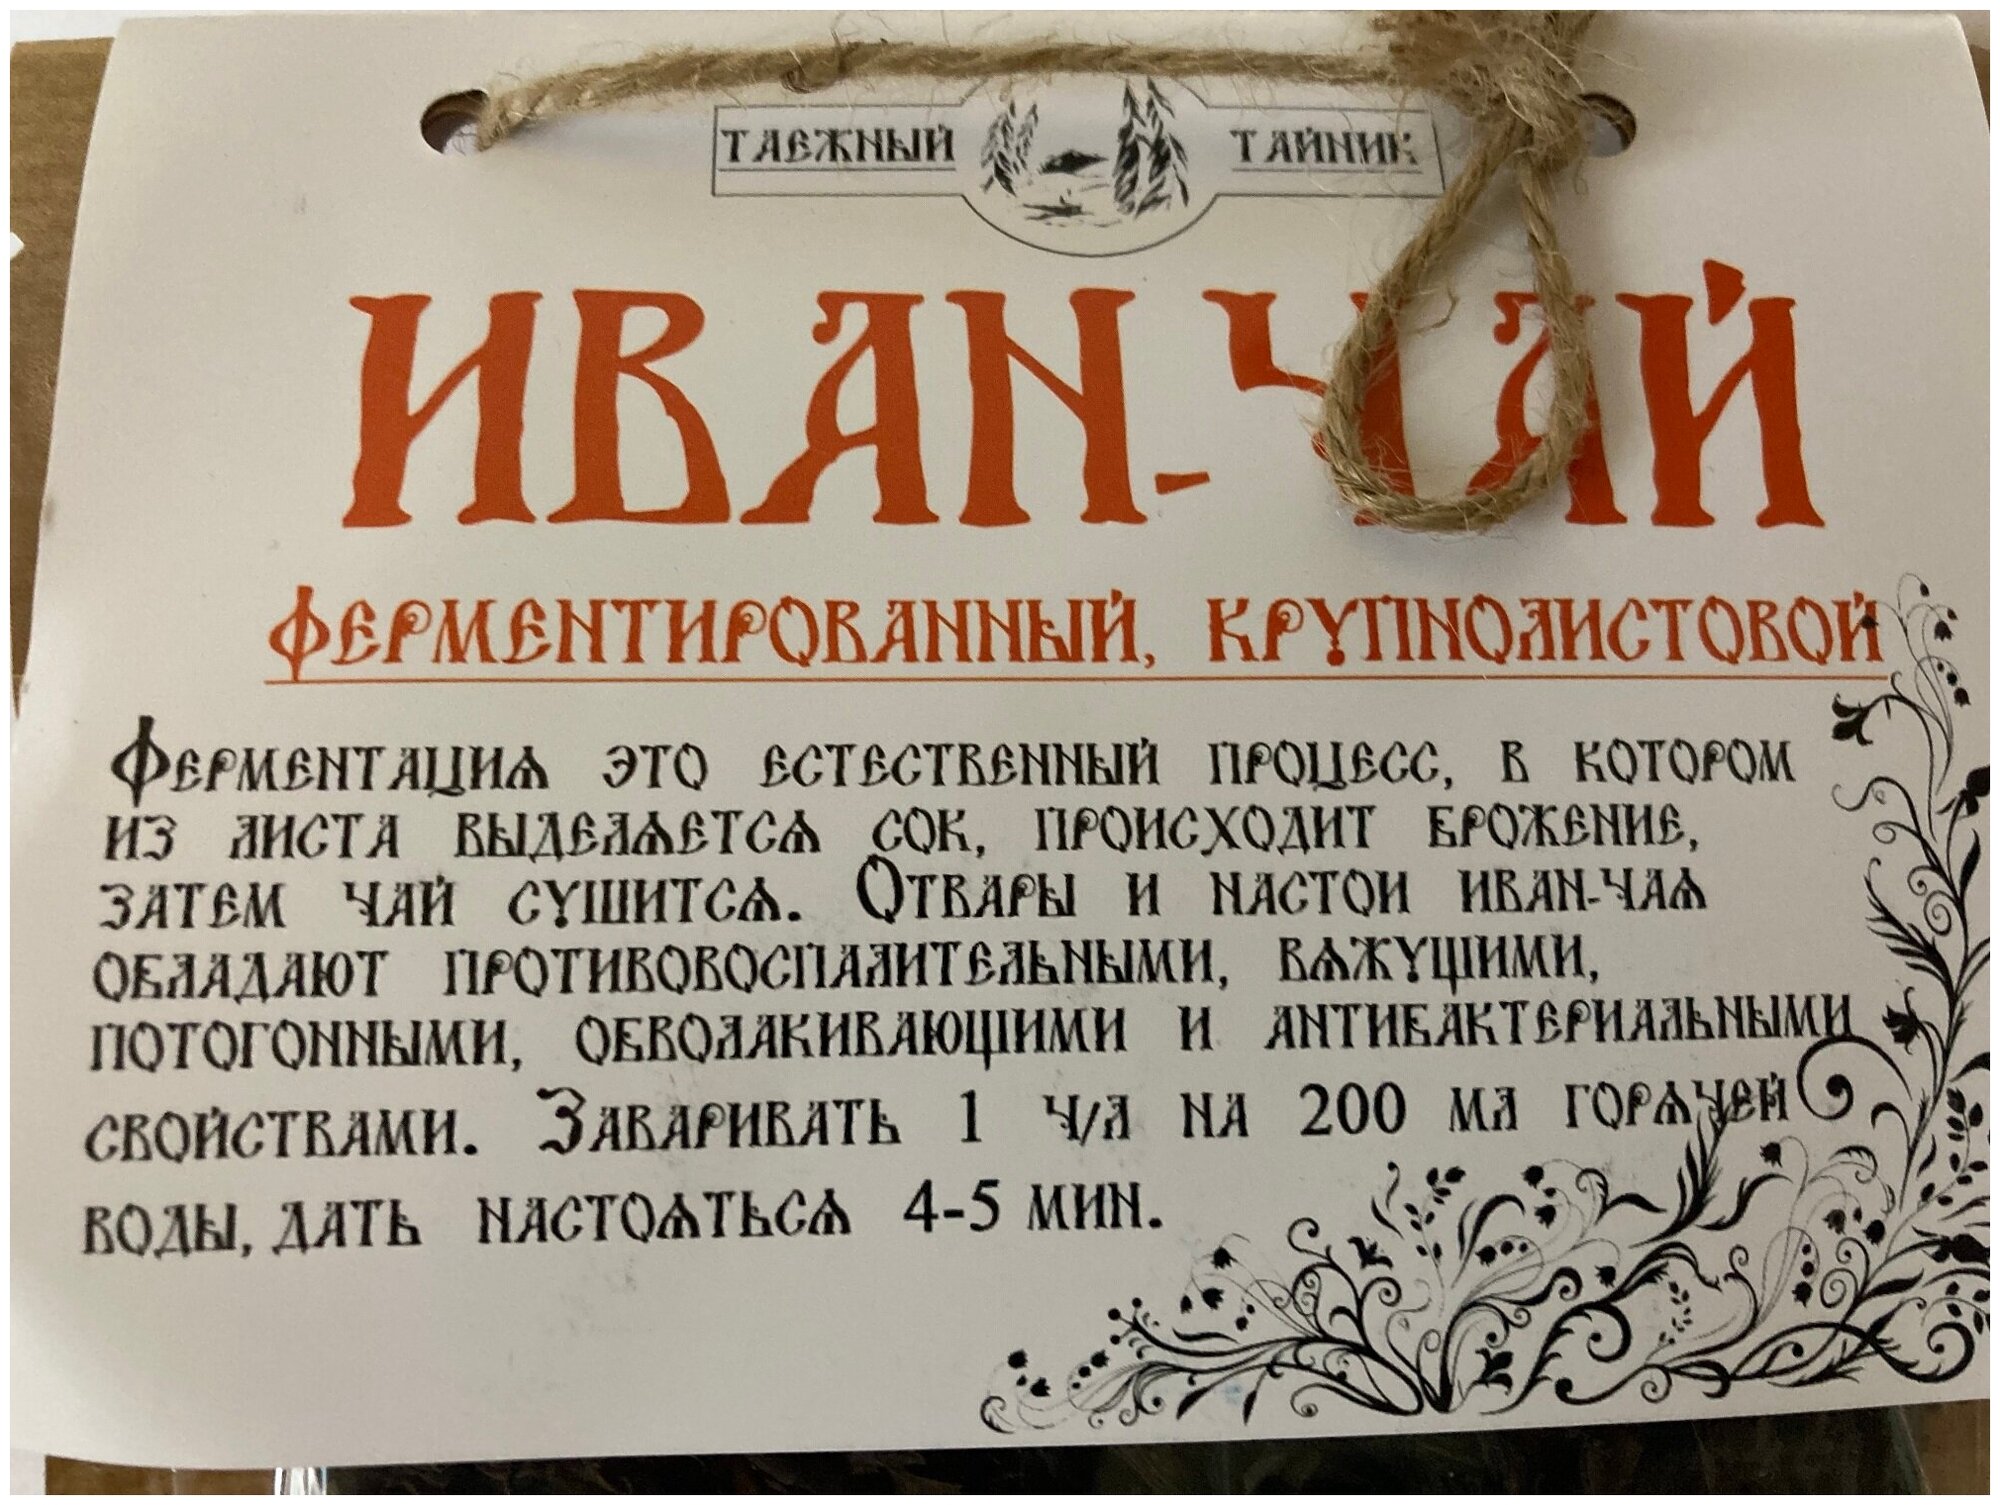 Иван чай "Крупнолистовой", ферментированный, 50 грамм